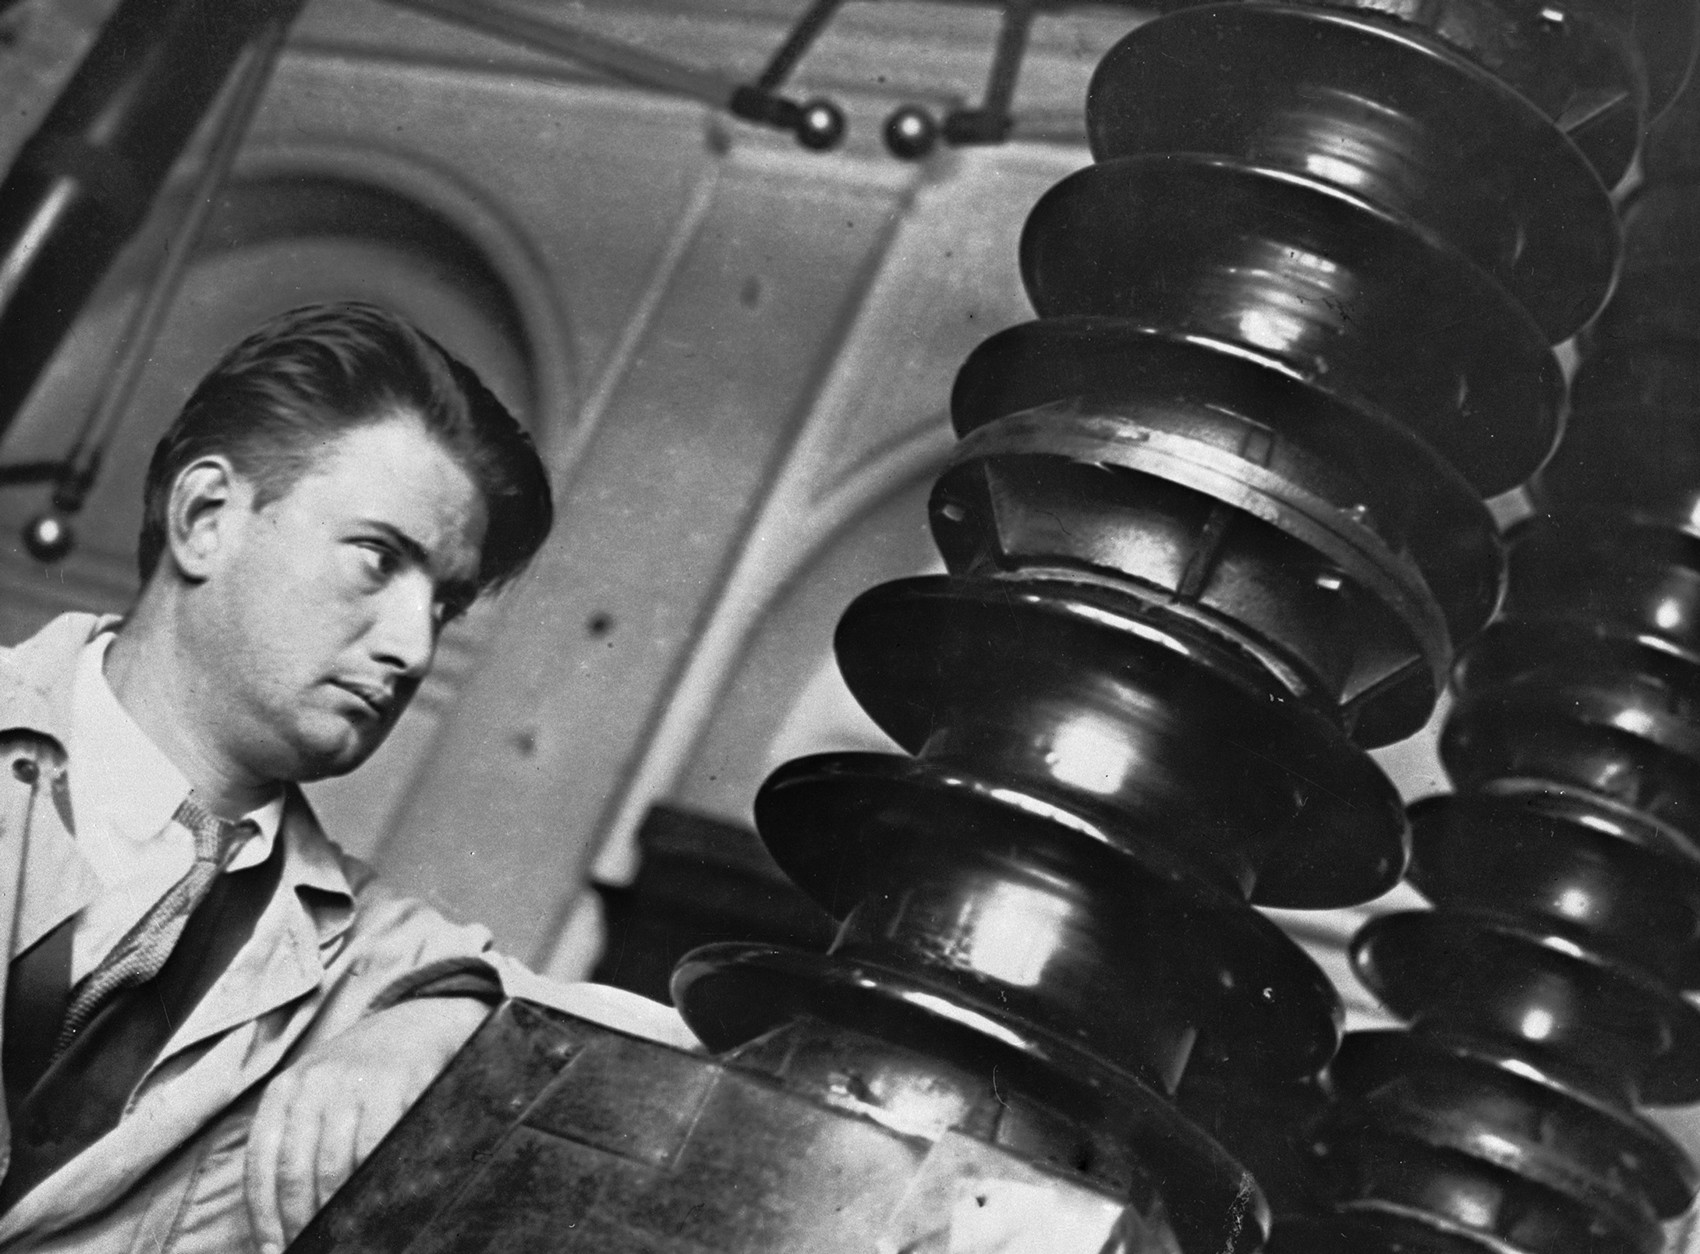 Le physicien Igor Kourtchatov (1903-1960) est l’un des premiers (1932) en URSS à avoir étudié le noyau atomique. Institut du radium Khlopine. Leningrad.